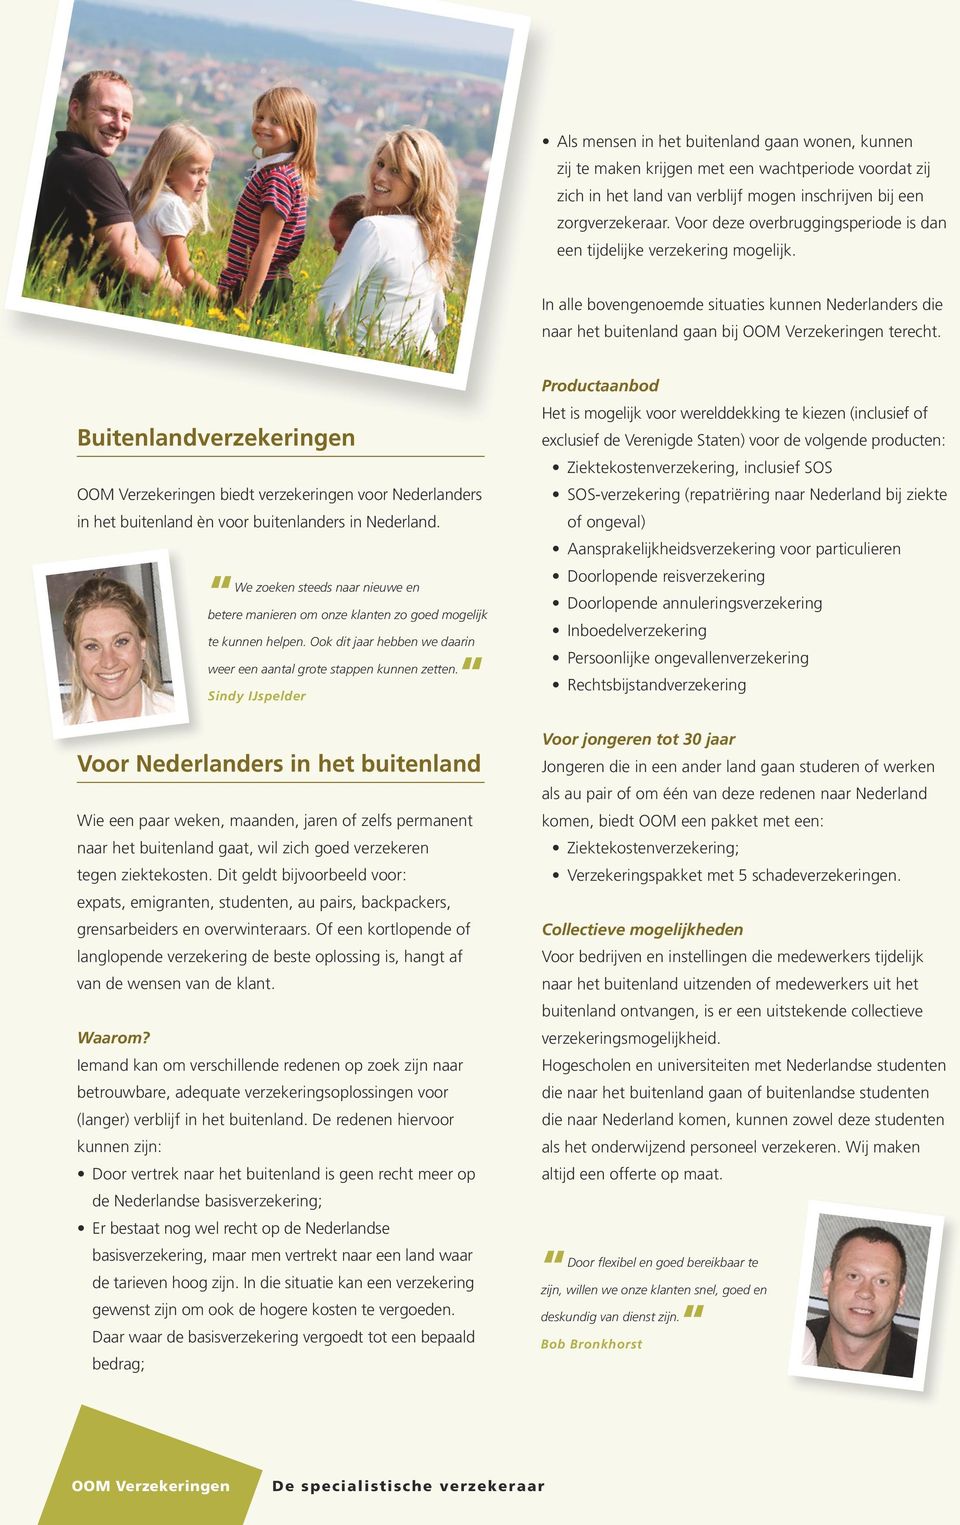 Buitenlandverzekeringen biedt verzekeringen voor Nederlanders in het buitenland èn voor buitenlanders in Nederland.